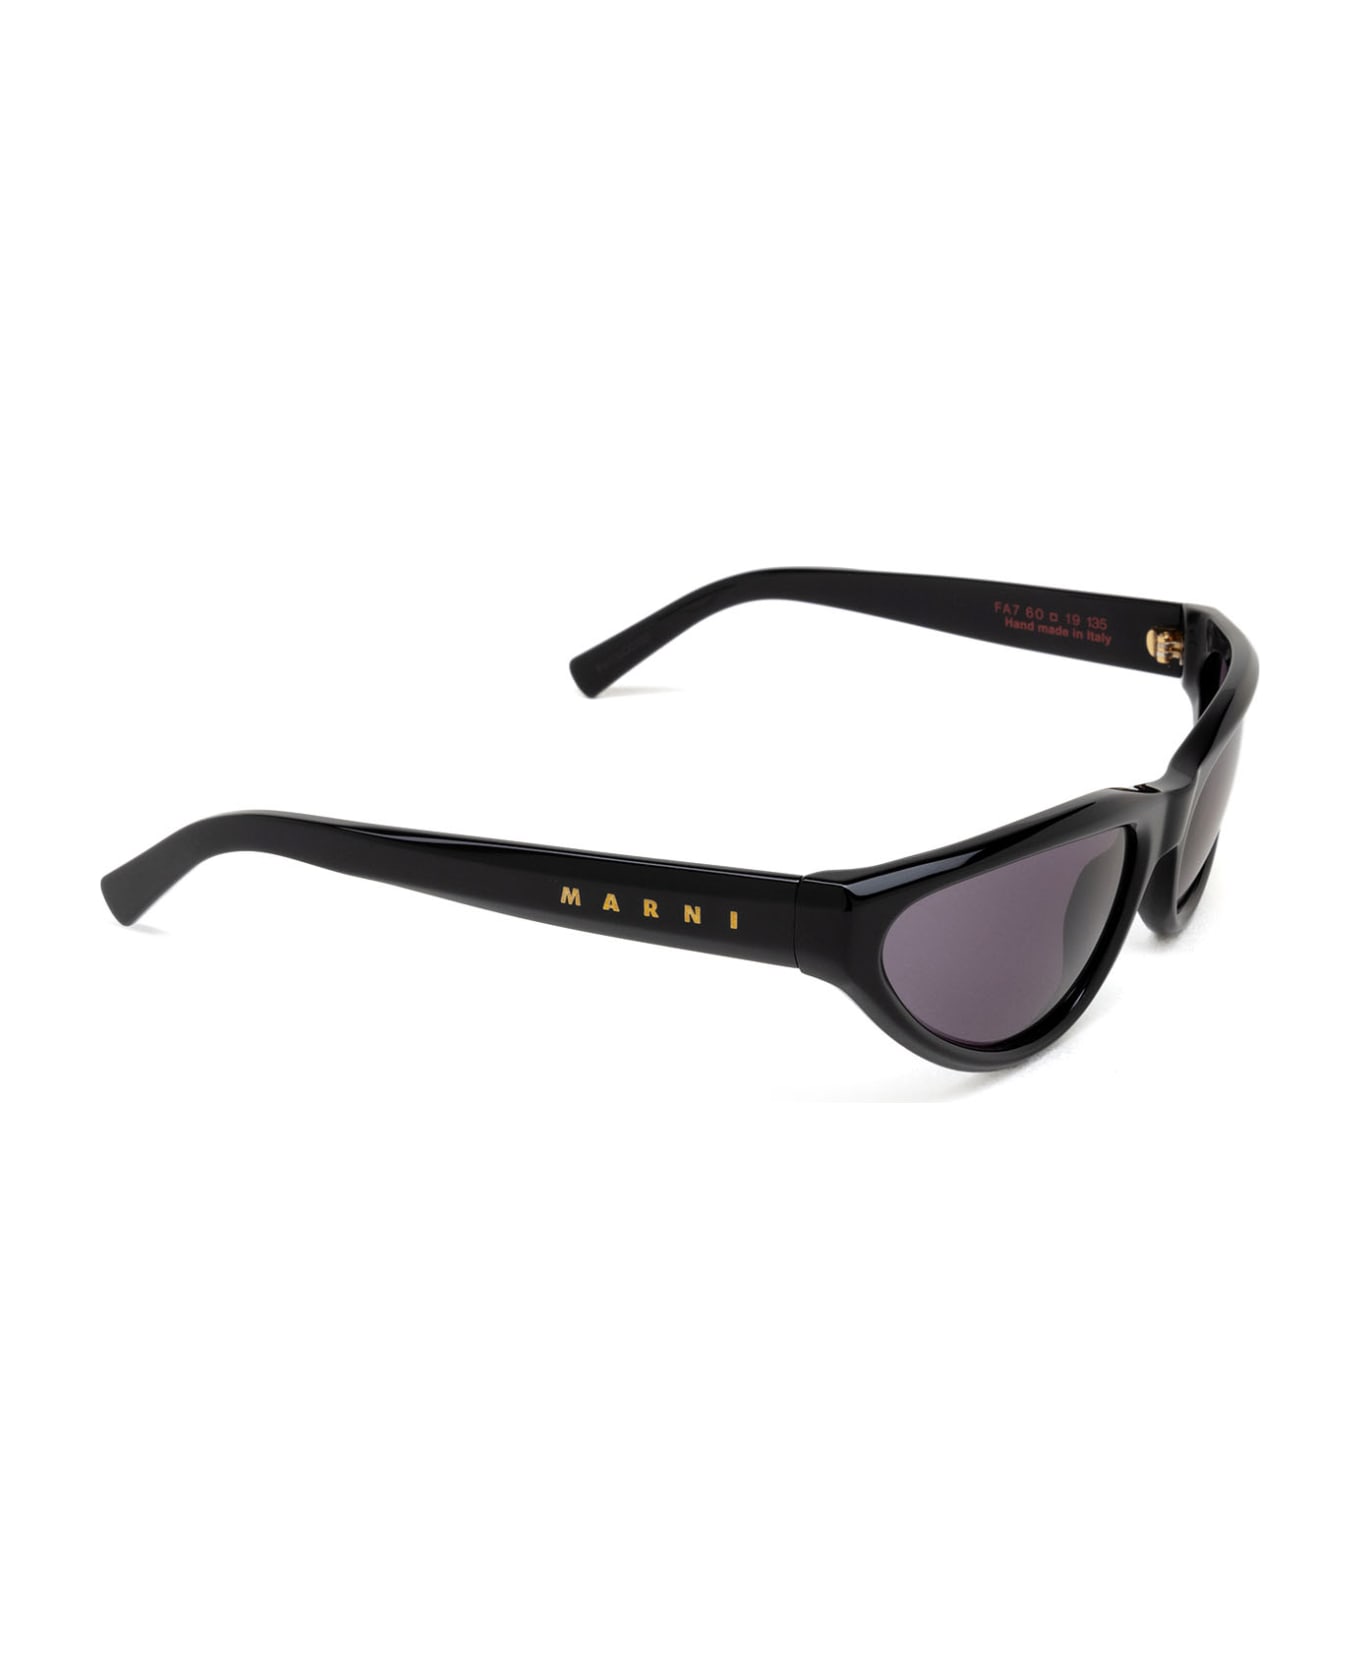 Marni Eyewear Mavericks Black Sunglasses - Black サングラス